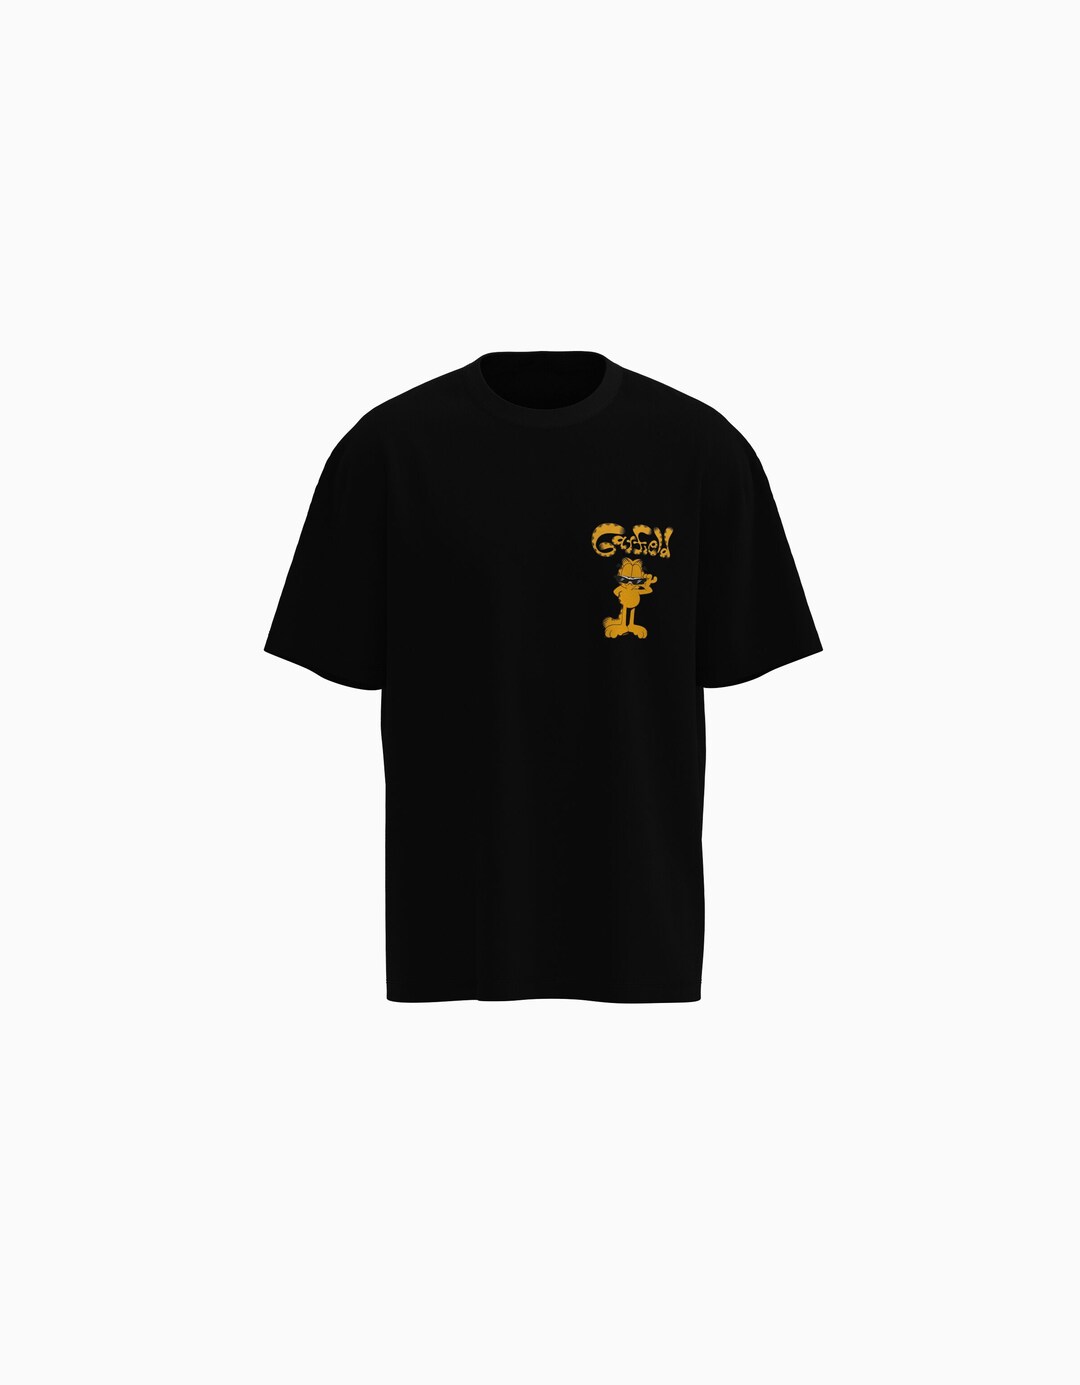 T-shirt Garfield manches courtes boxy fit imprimé